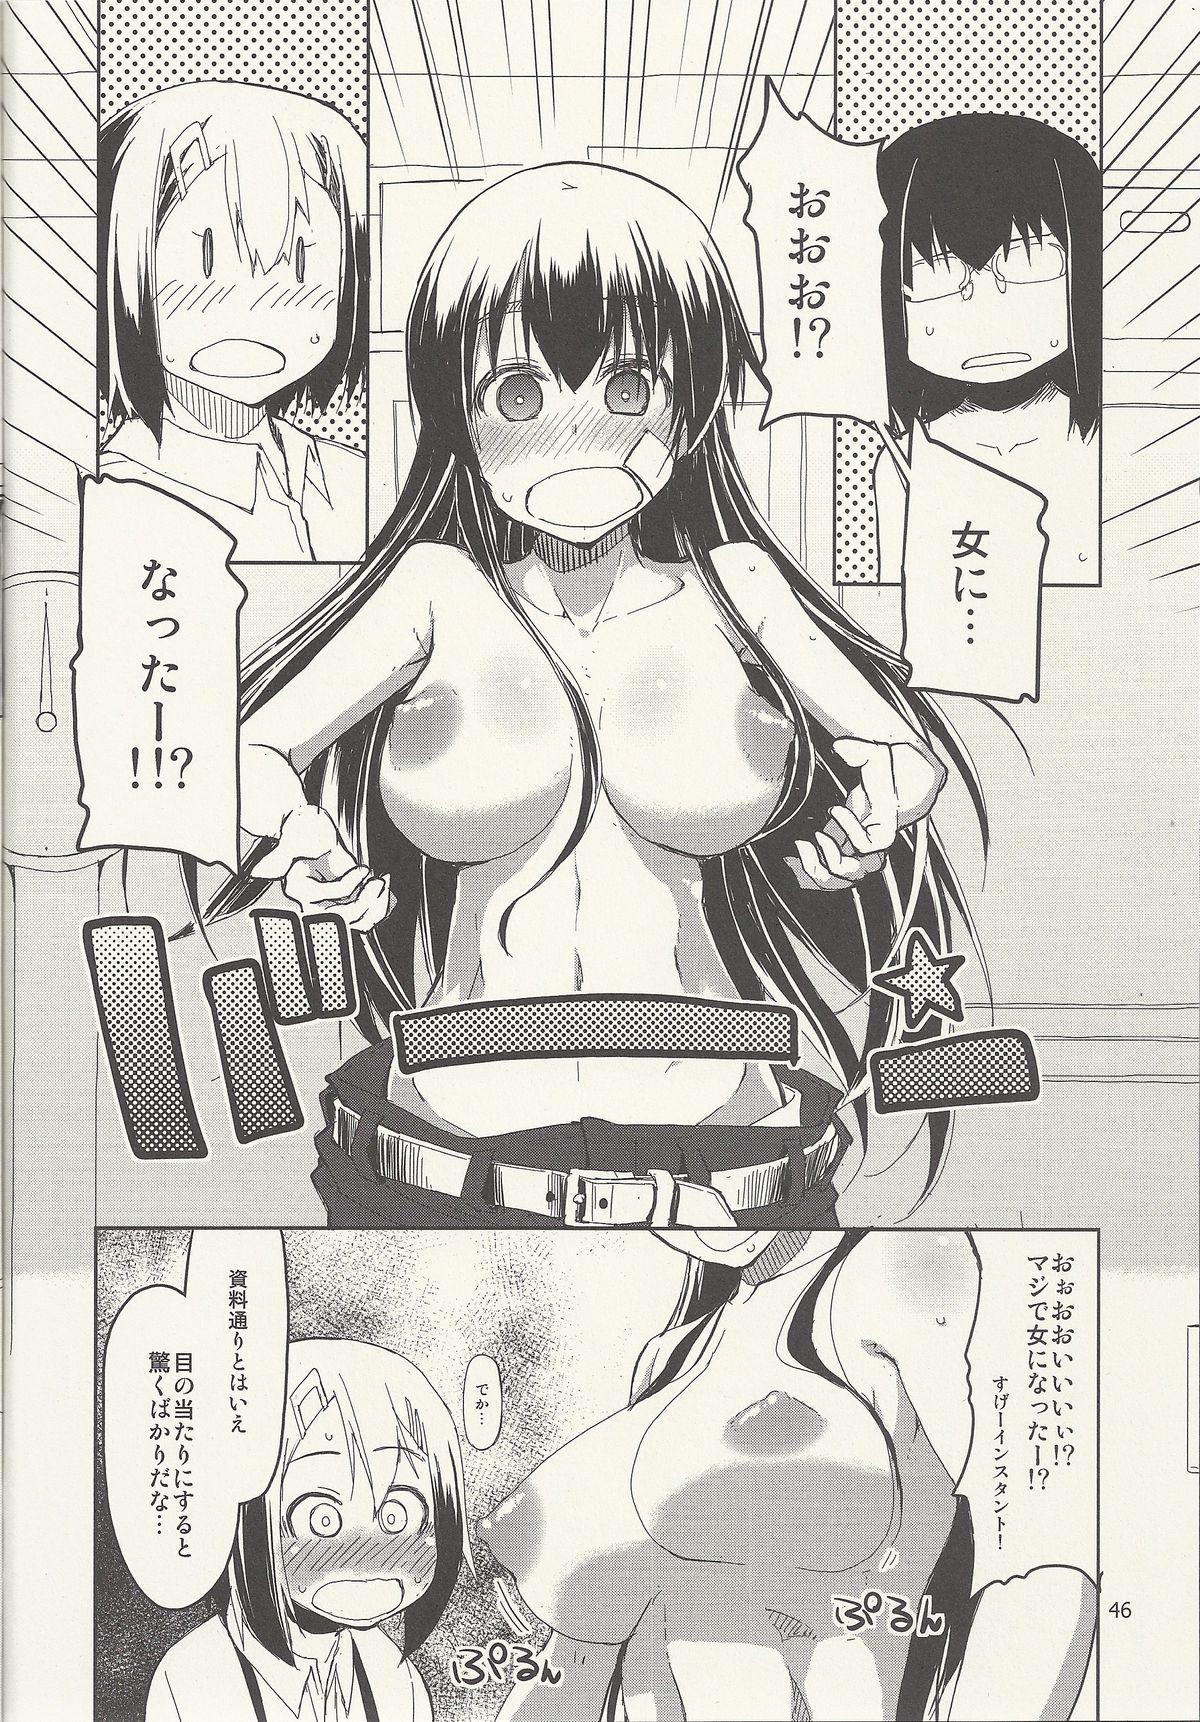 Natsuzuka-san no Himitsu. Vol. 6 Kanketsu Hen 46